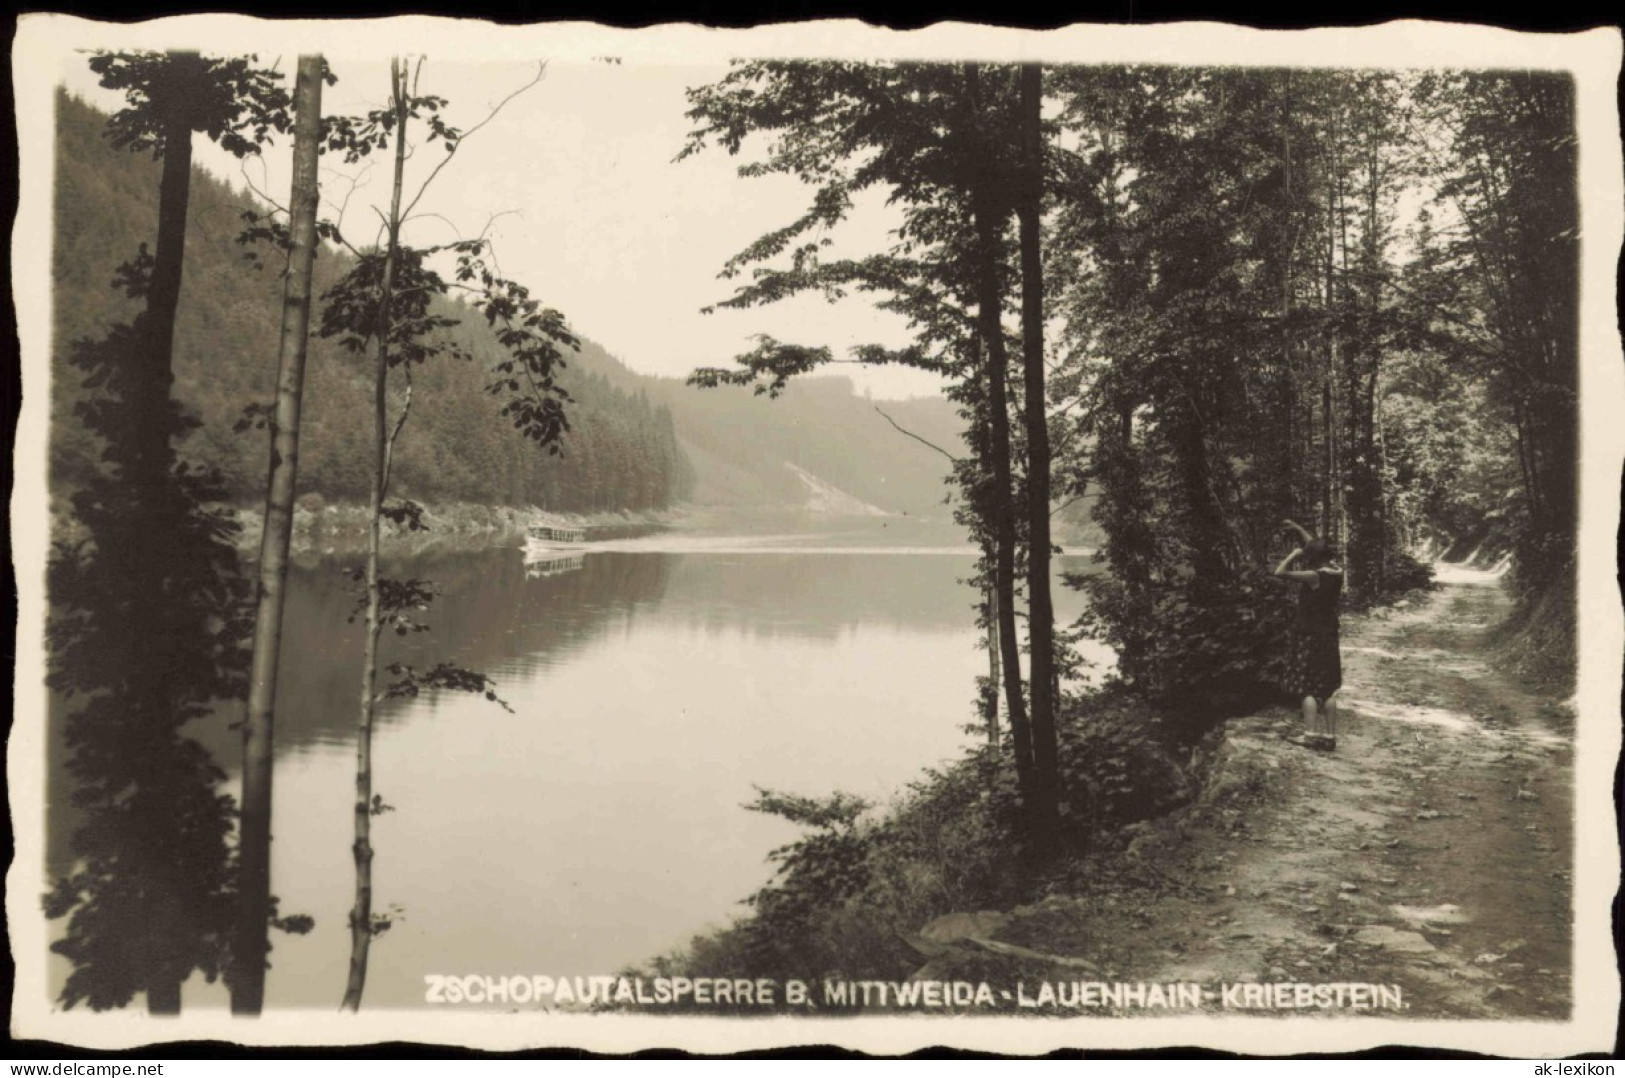 Lauenhain Mittweida ZSCHOPAUTALSPERRE B.  1931  Landpoststempel FALKENHAIN - Mittweida